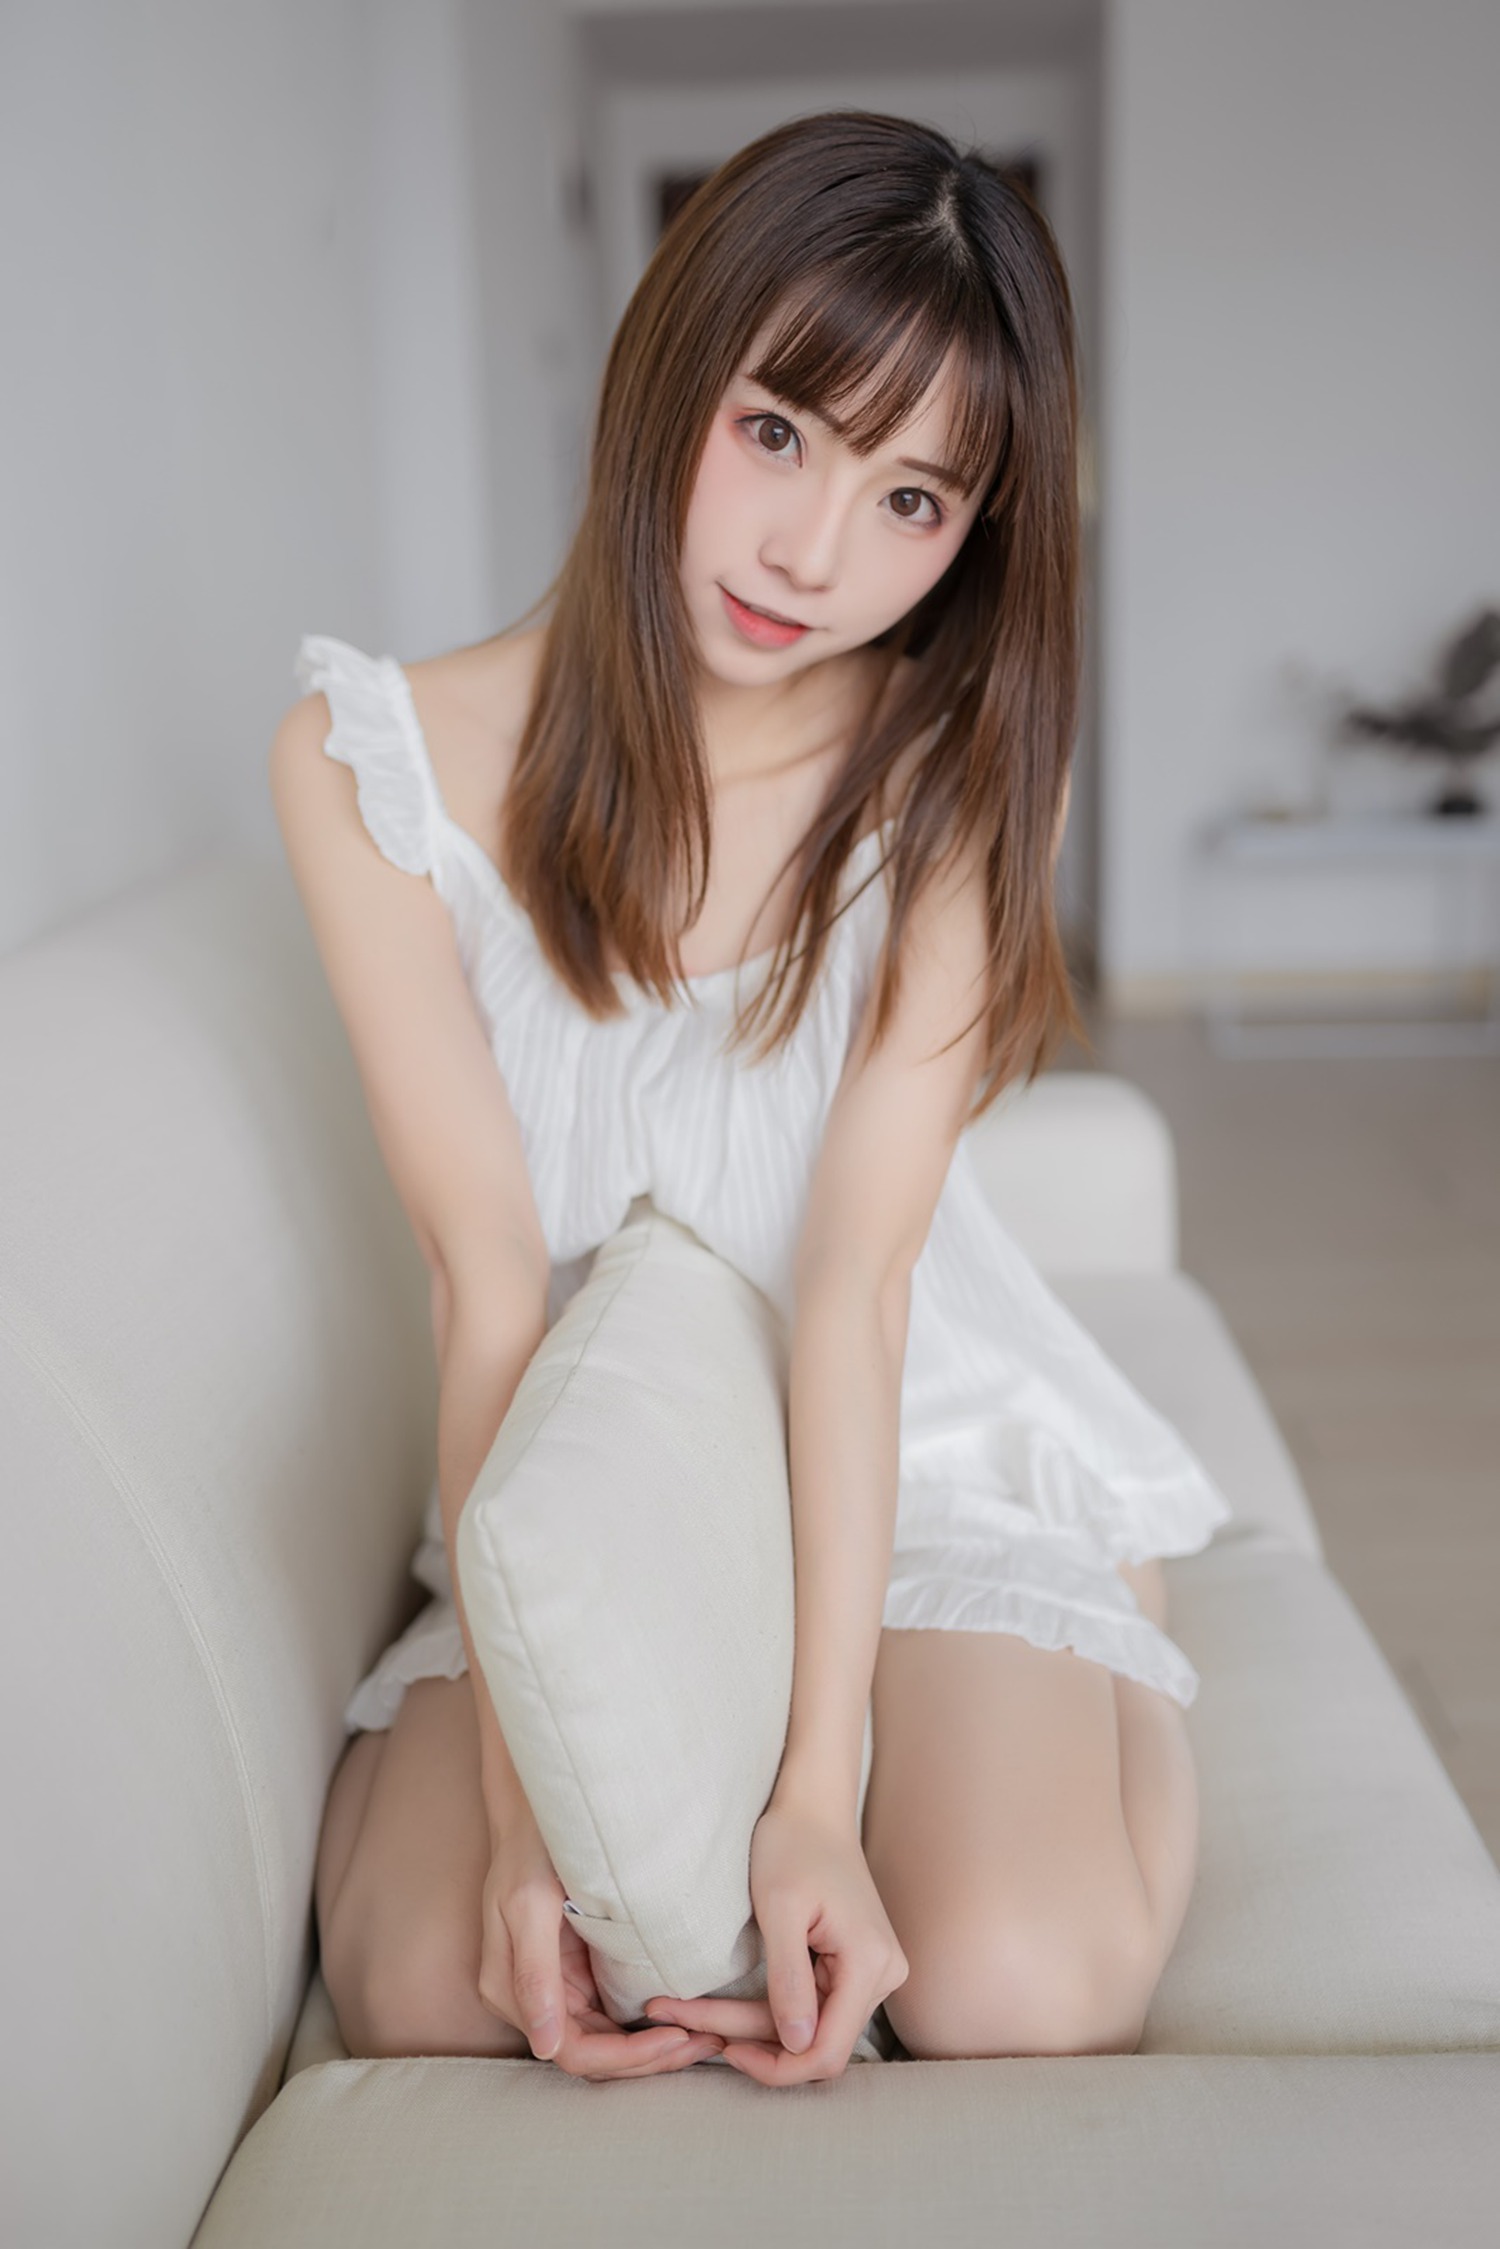 绮太郎 Kitaro &#8211; 白色睡衣 [46P]第1张